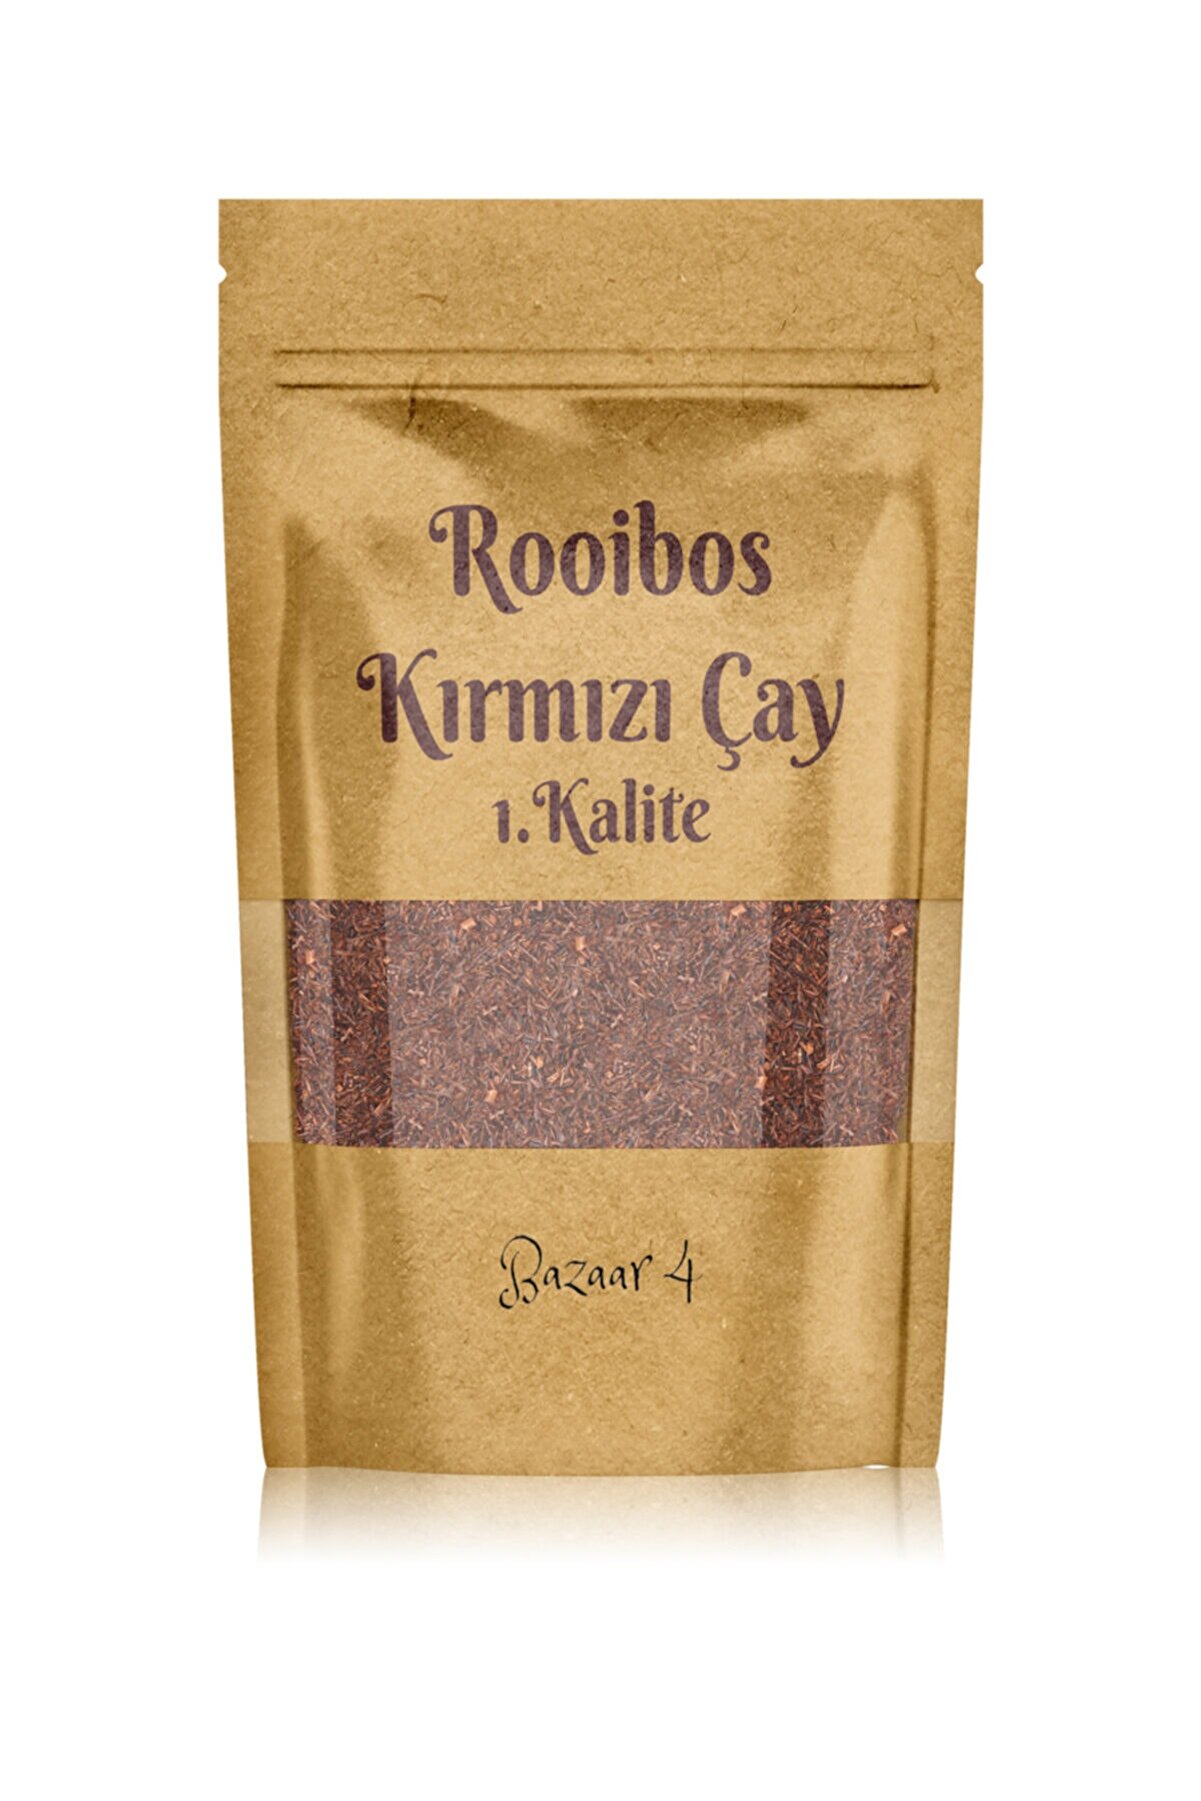 BAZAAR 4 Rooibos Kırmızı Çay Saf 1.kalite 75 gr